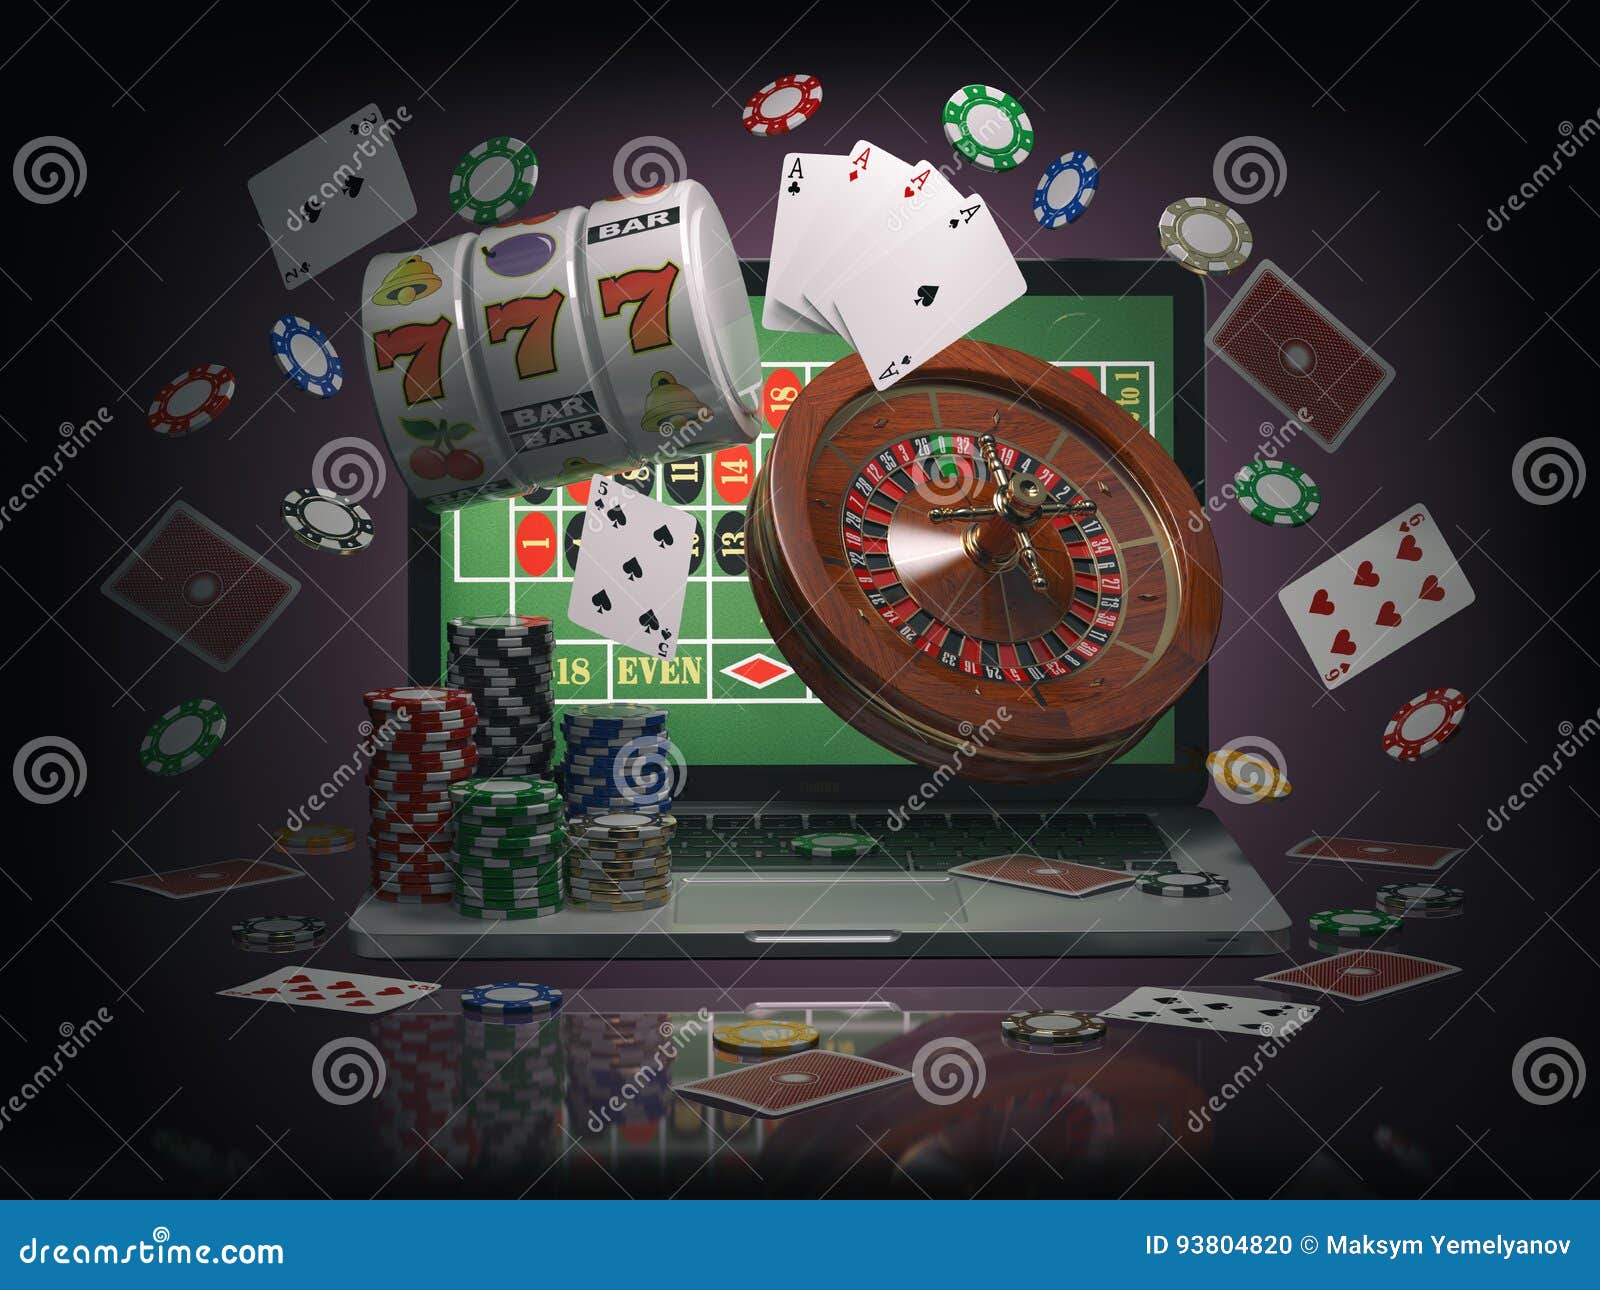 Книжки онлайн казино стоит ли играть в букмекерских конторах видео